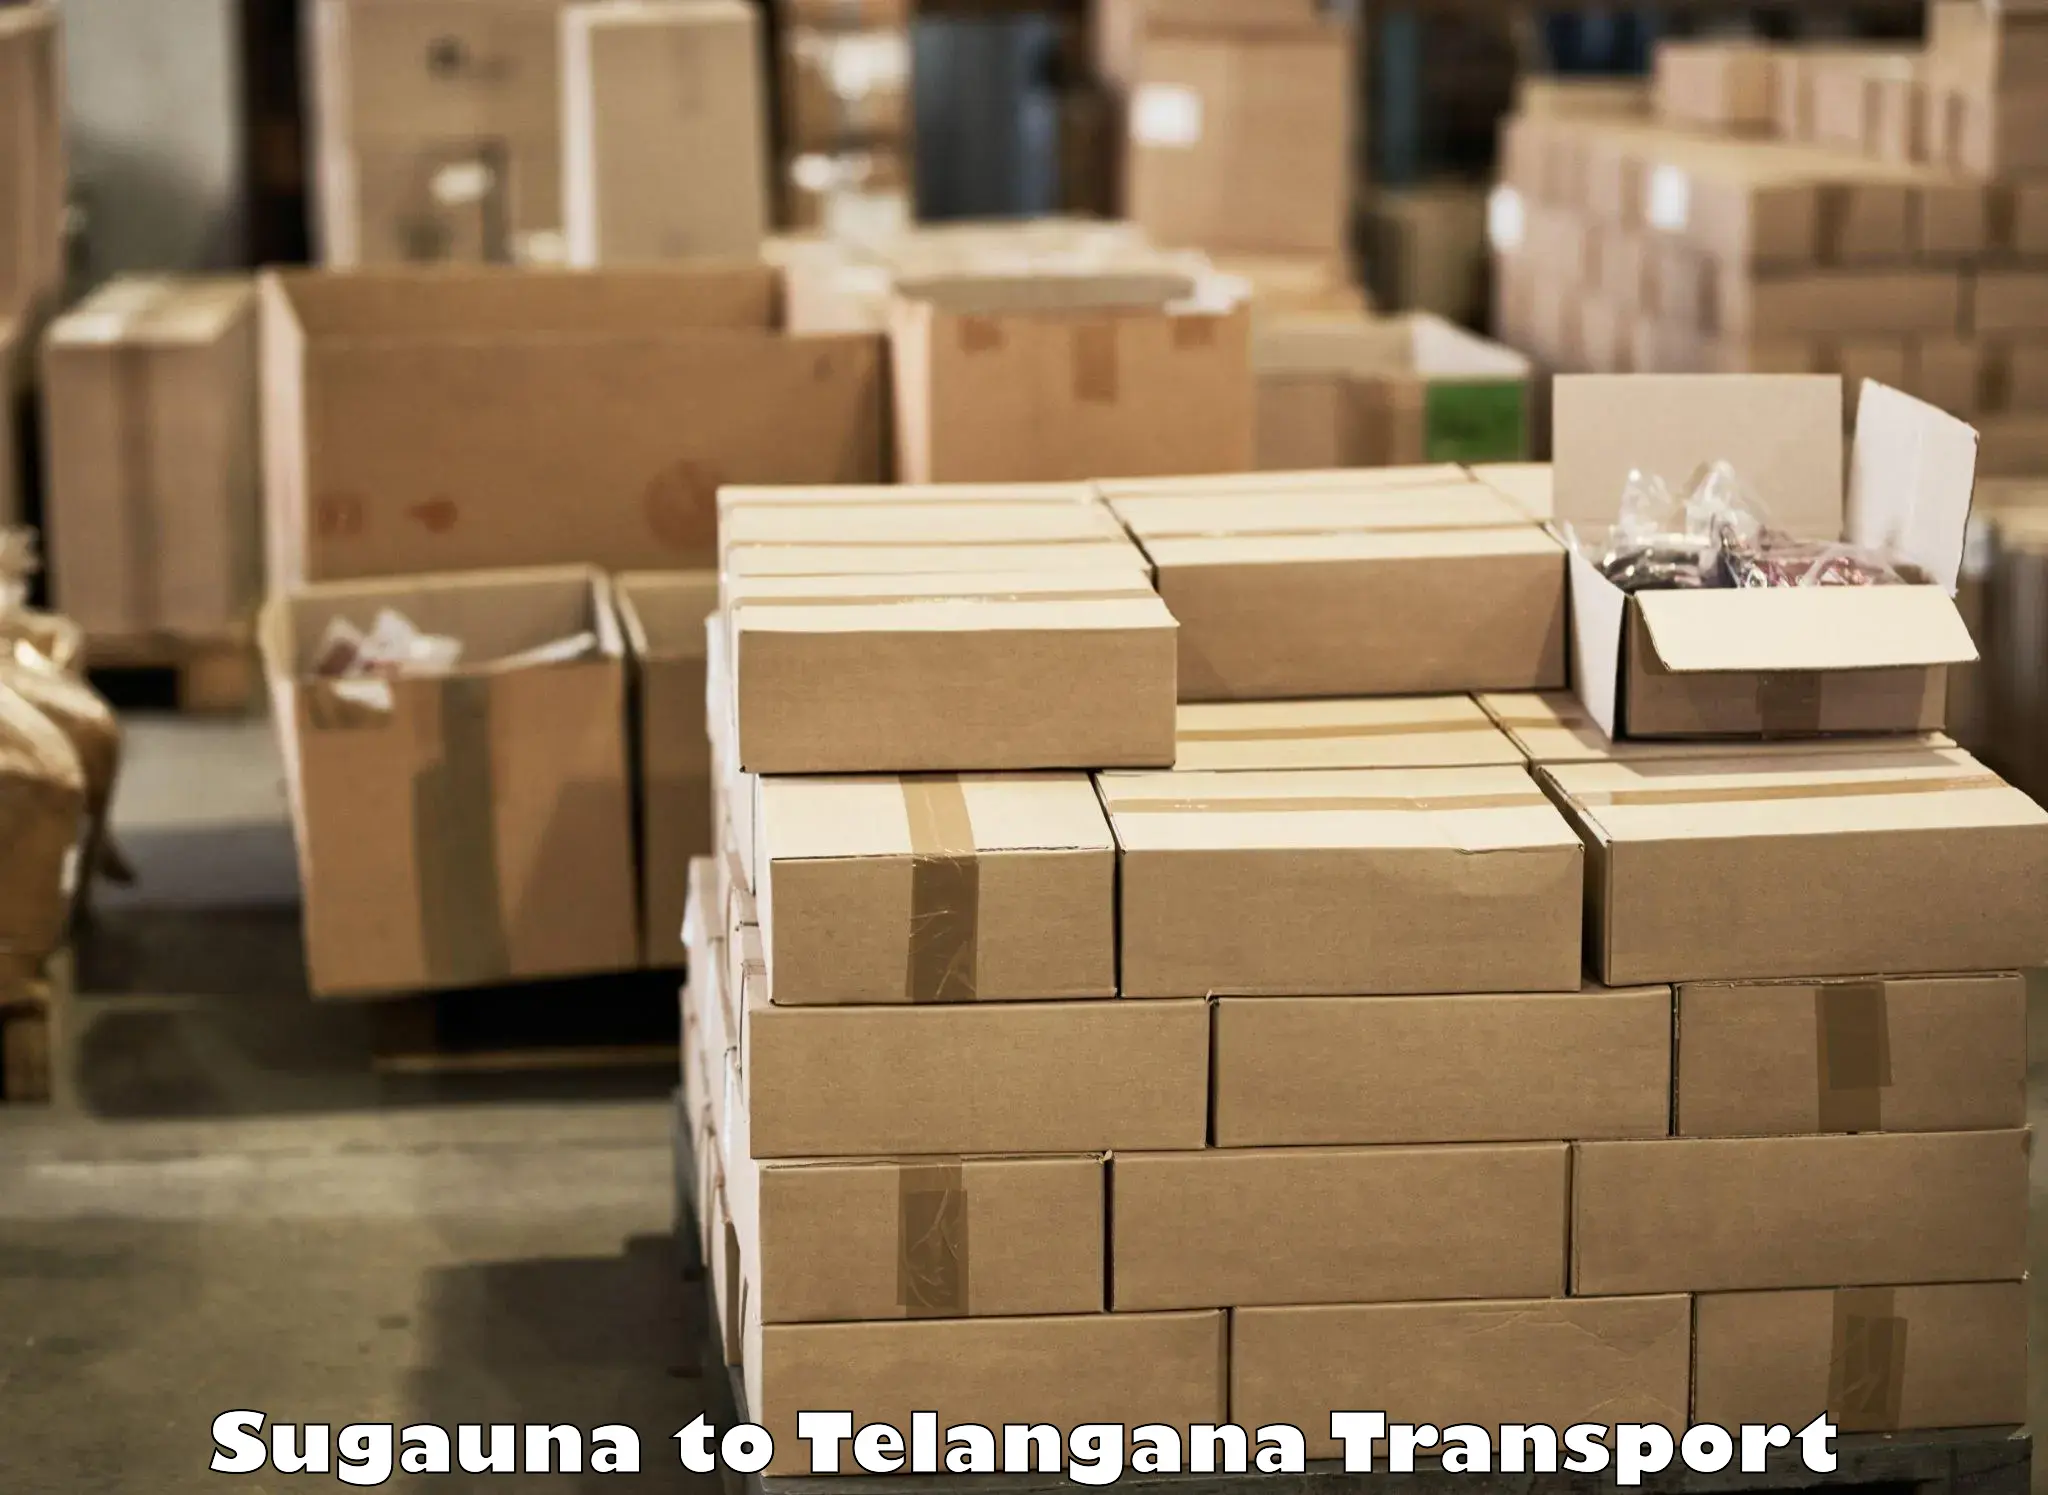 Container transportation services in Sugauna to Ibrahimpatnam